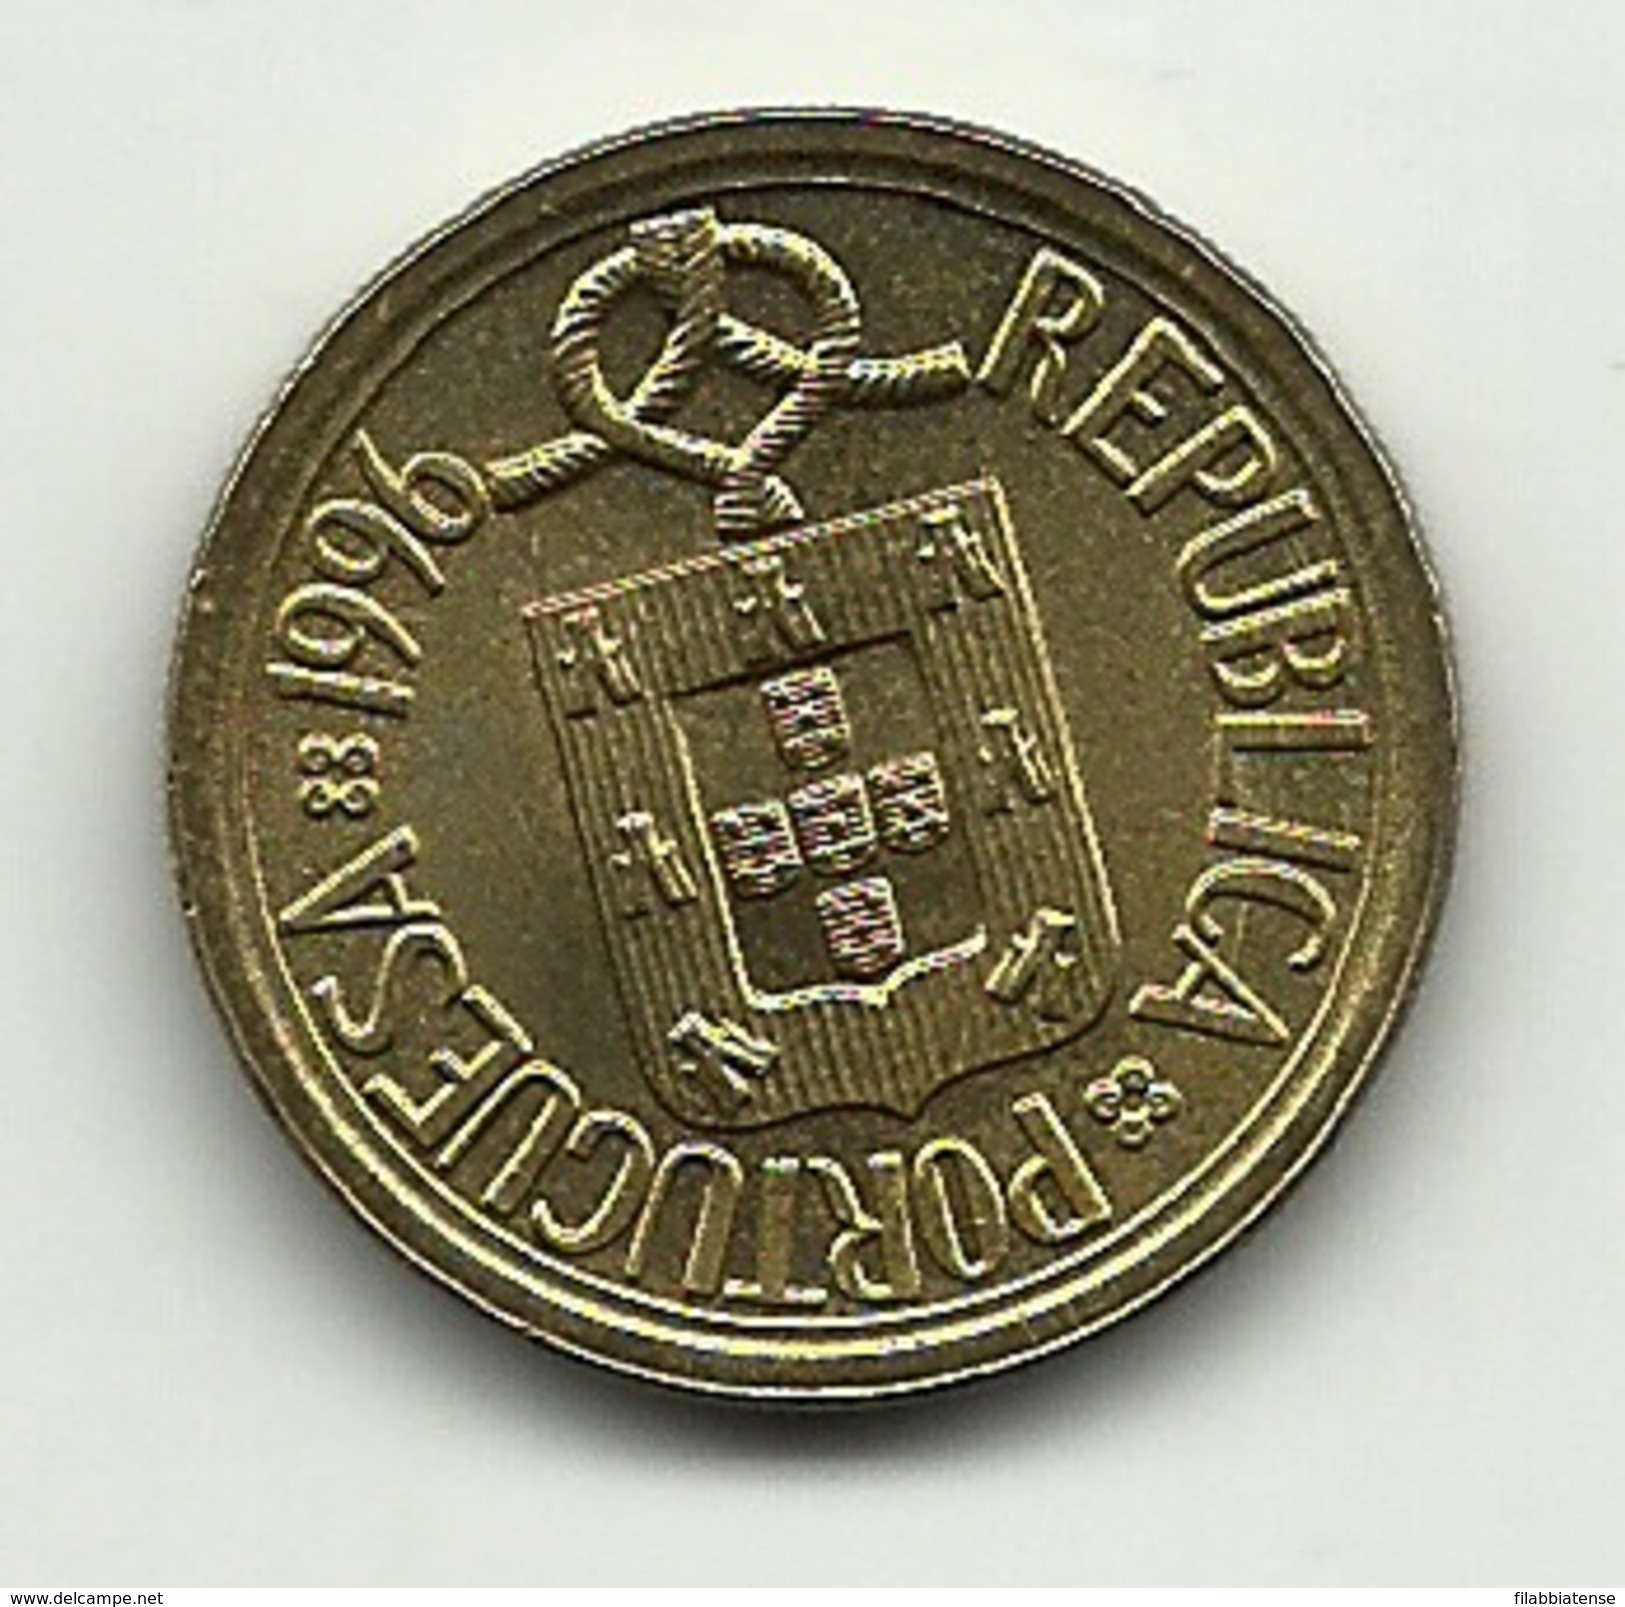 1996 - Portogallo 10 Escudos - Portogallo